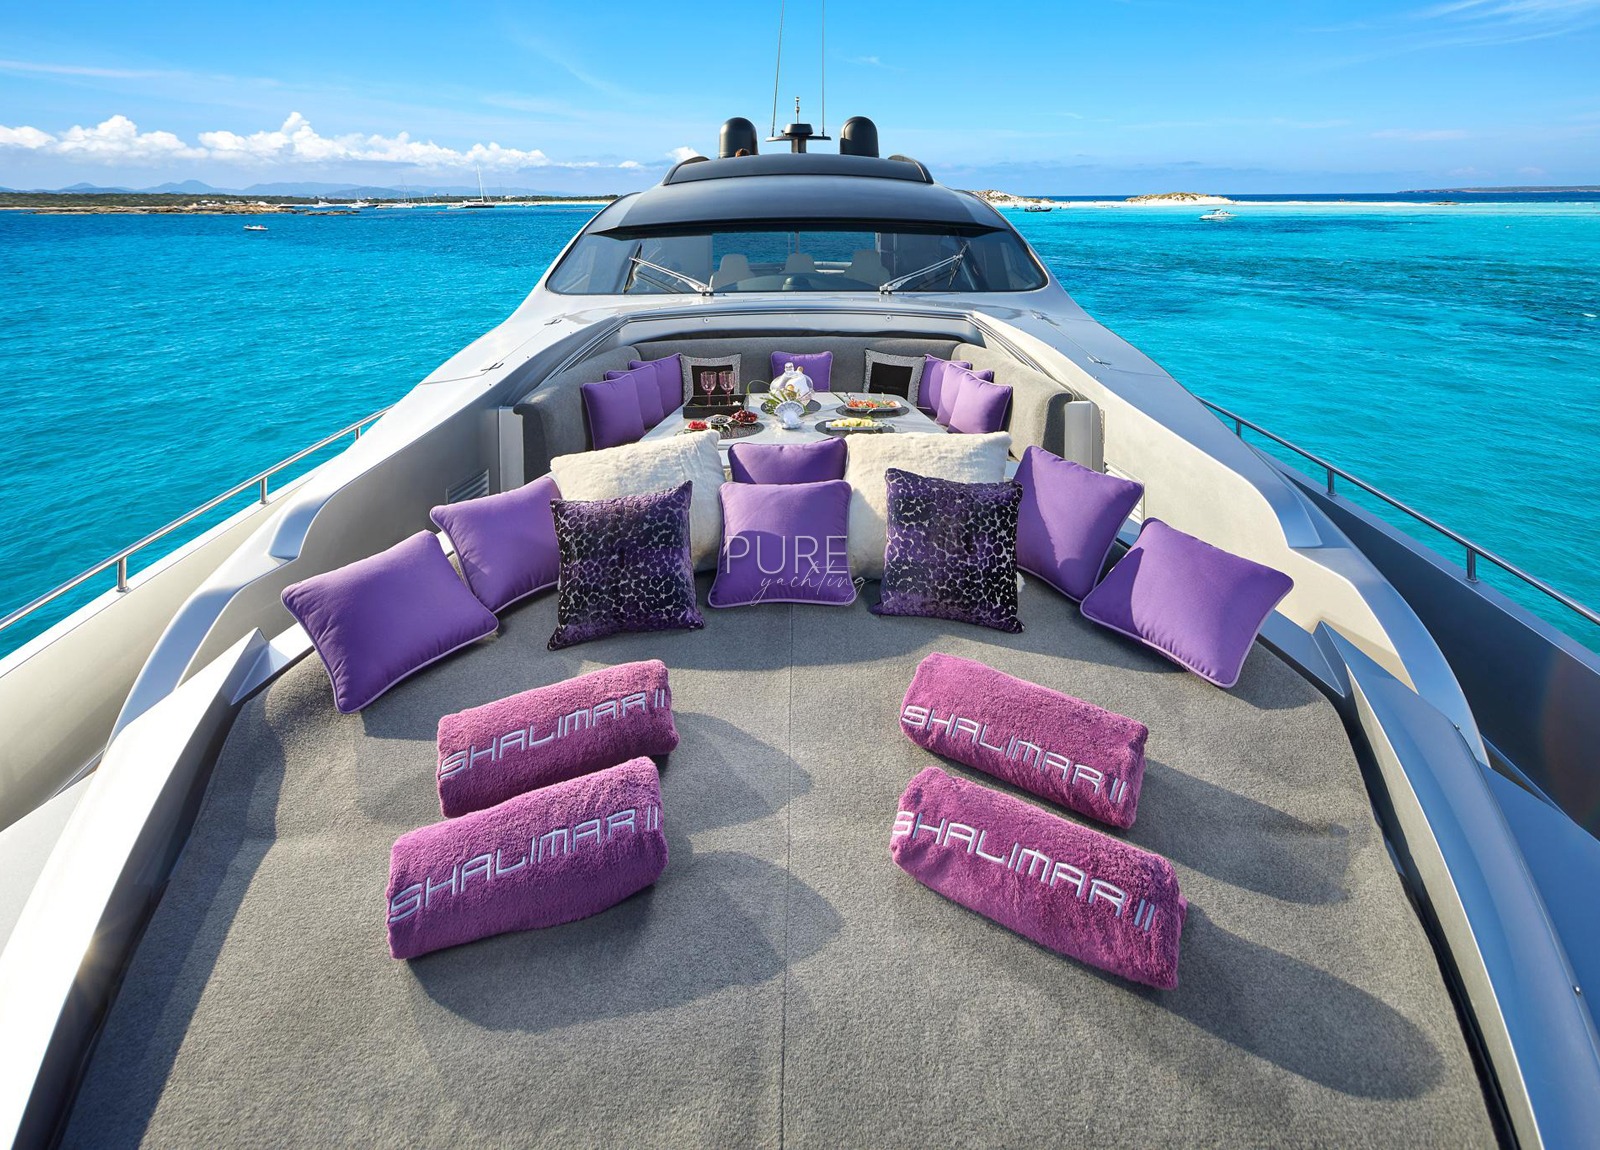 sunbeds luxusyacht pershing 90 shalimar ii balearic islands